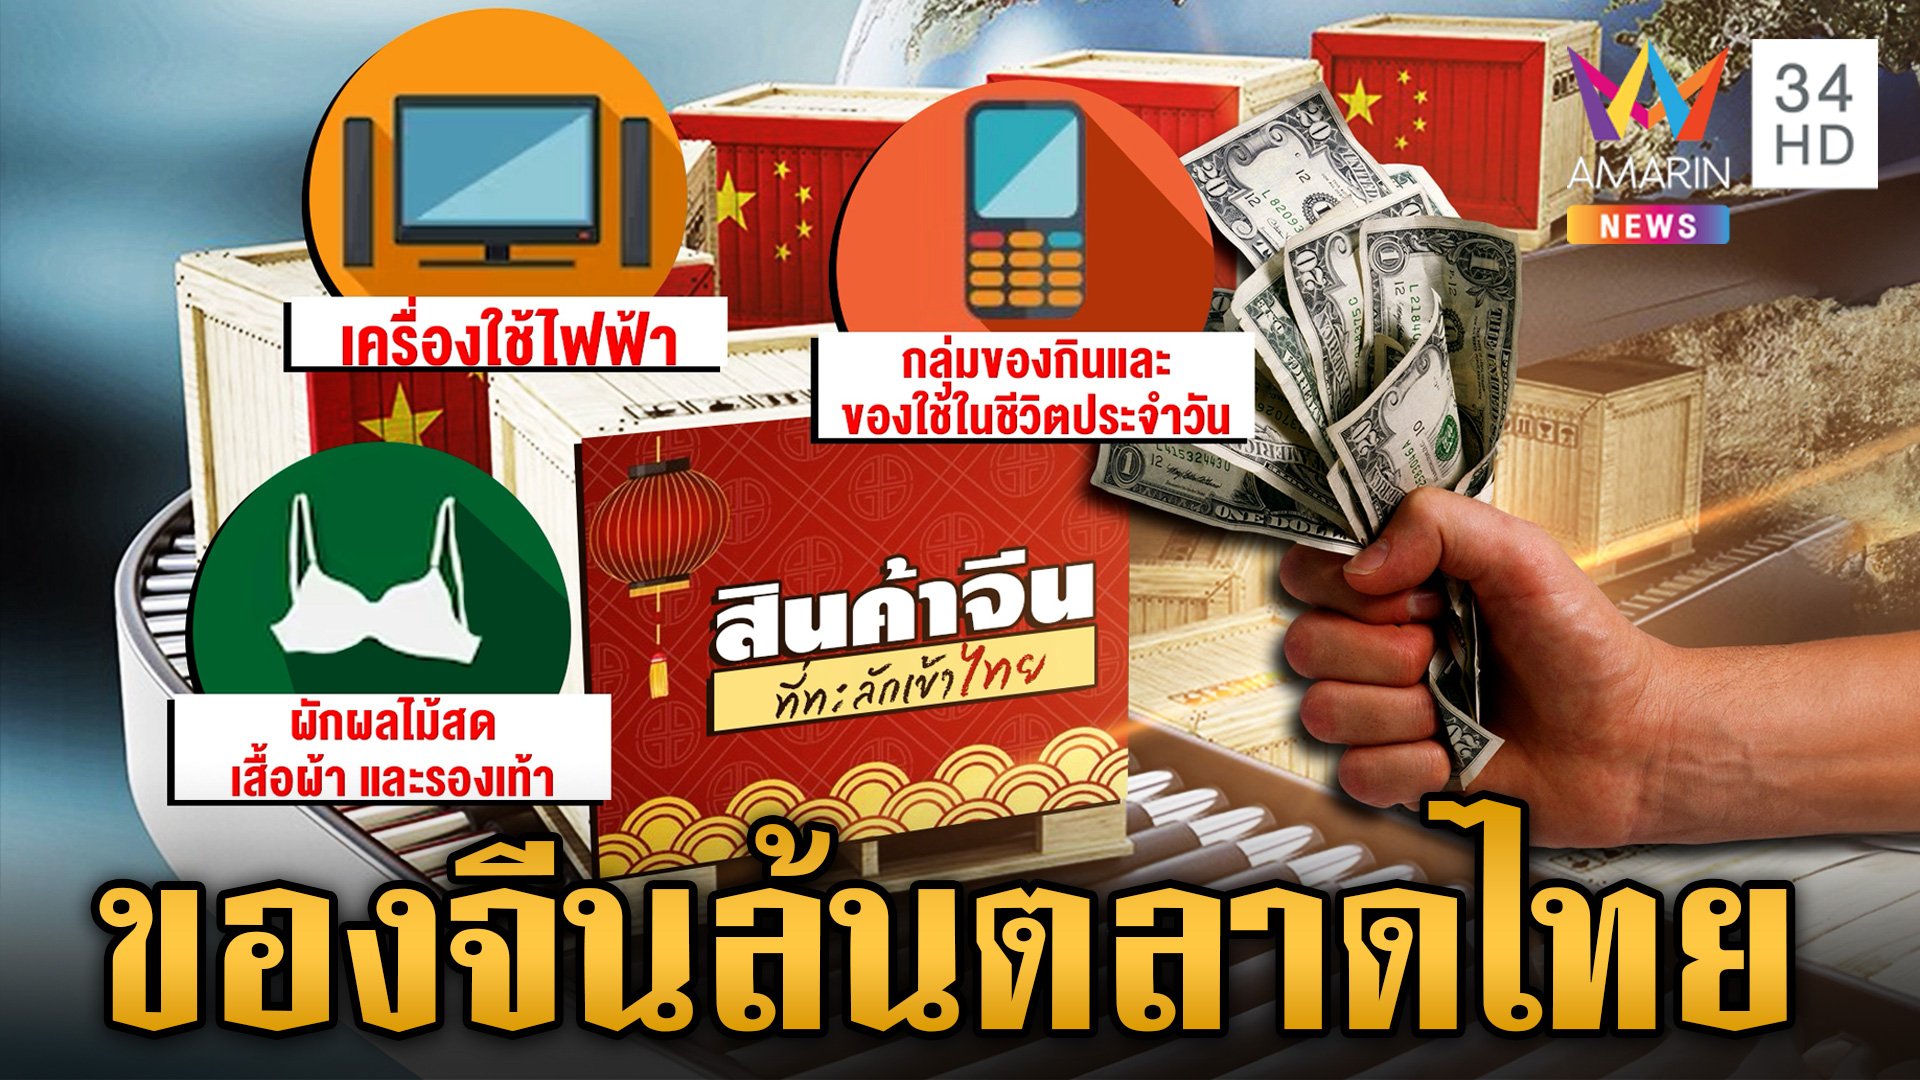 สินค้าจีนทะลักเข้าไทย พ่อค้าแม่ขายกระอัก โดนตัดราคาแบบโหด | ข่าวเย็นอมรินทร์ | 16 ก.พ. 67 | AMARIN TVHD34